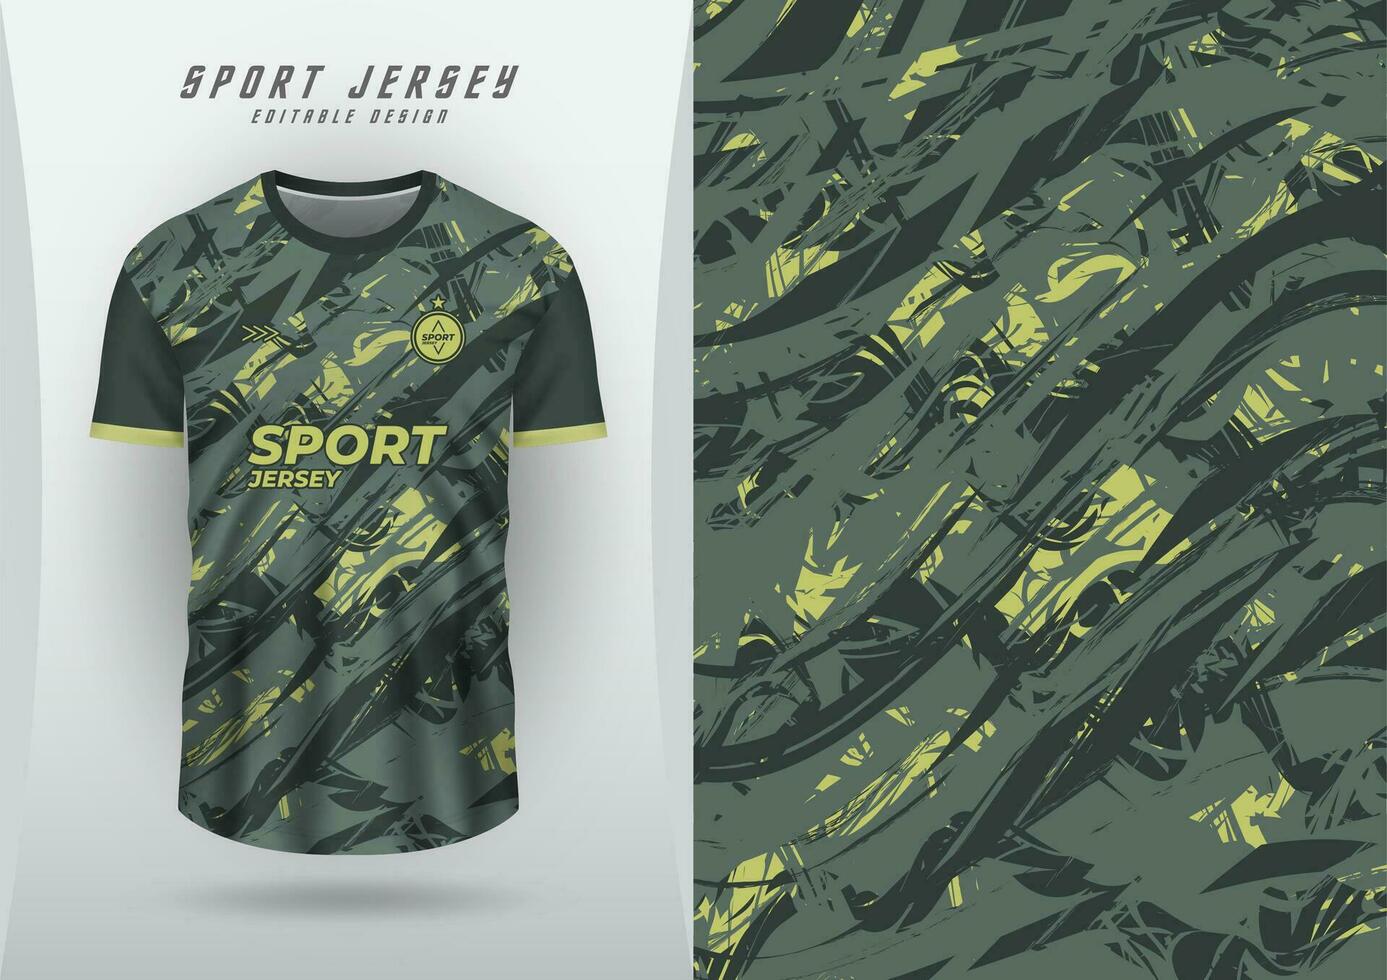 bakgrund för sporter jersey, fotboll jersey, löpning jersey, tävlings jersey, grunge, grå och gul mönster. vektor